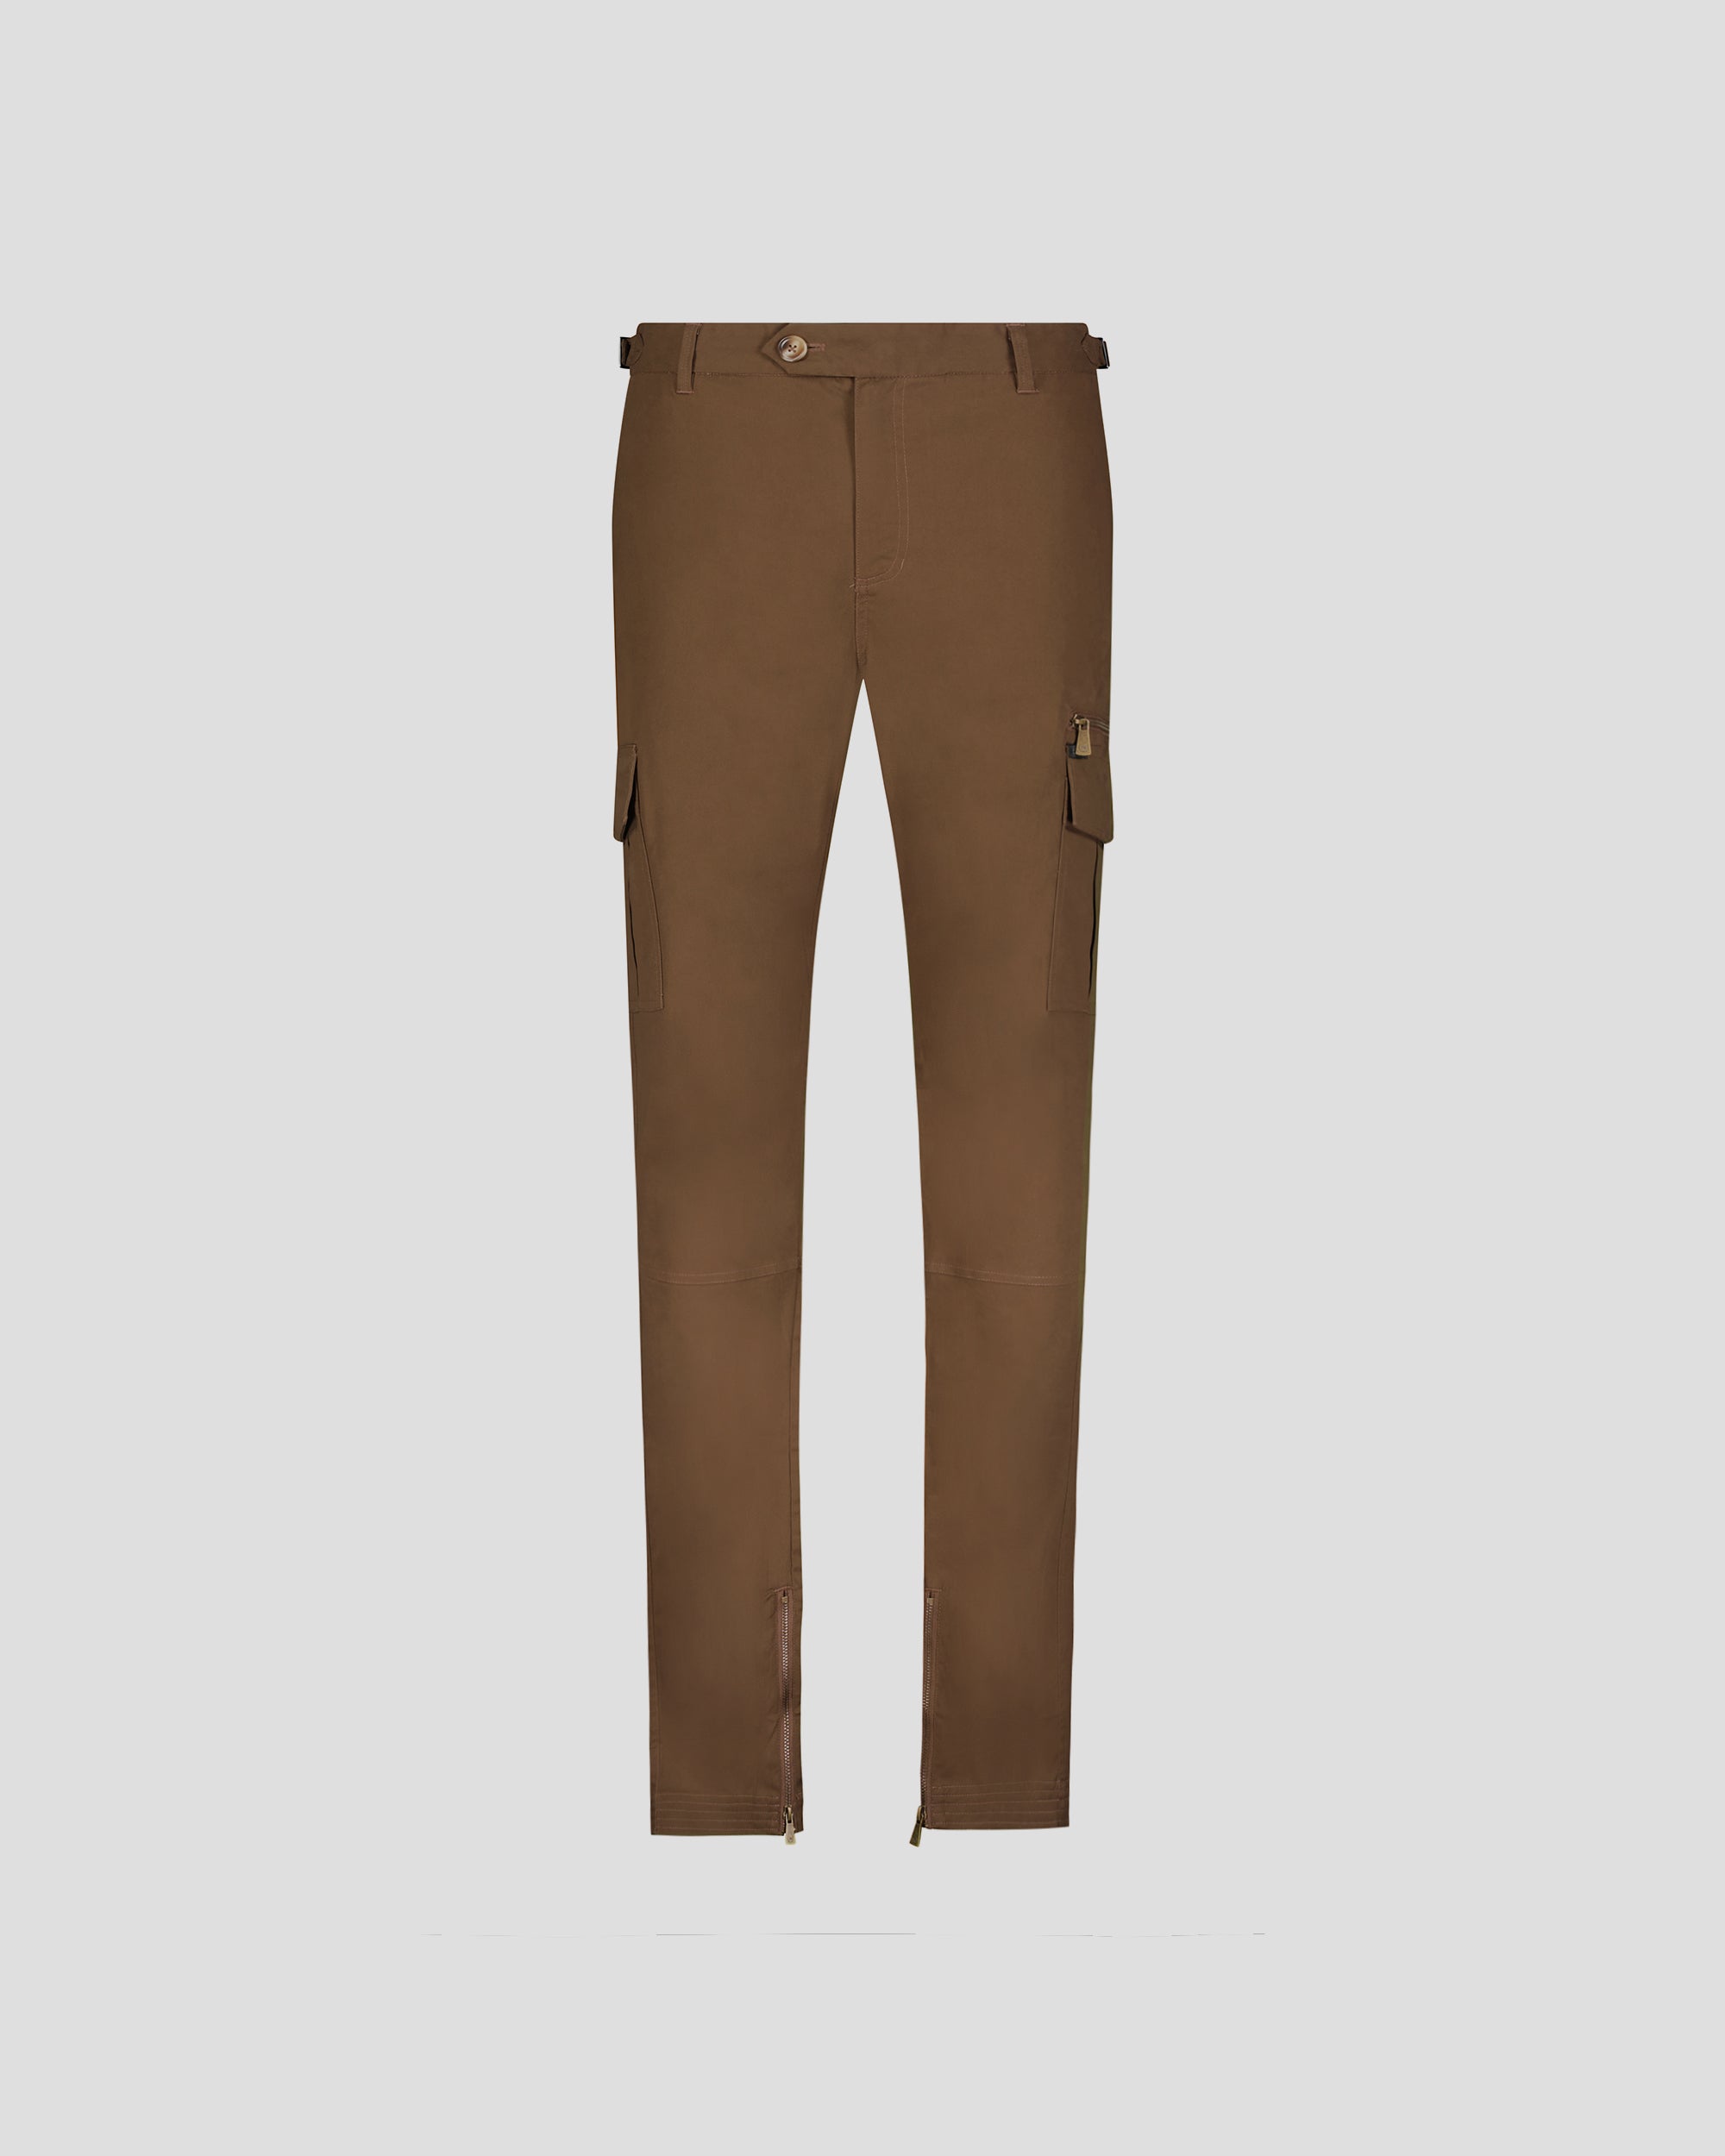 Denim Trousers Jogging Pants Men Denim Cotton Size Zipper Black Brown Cargo  Pants Winter Thick Tactical Pants Overalls Men